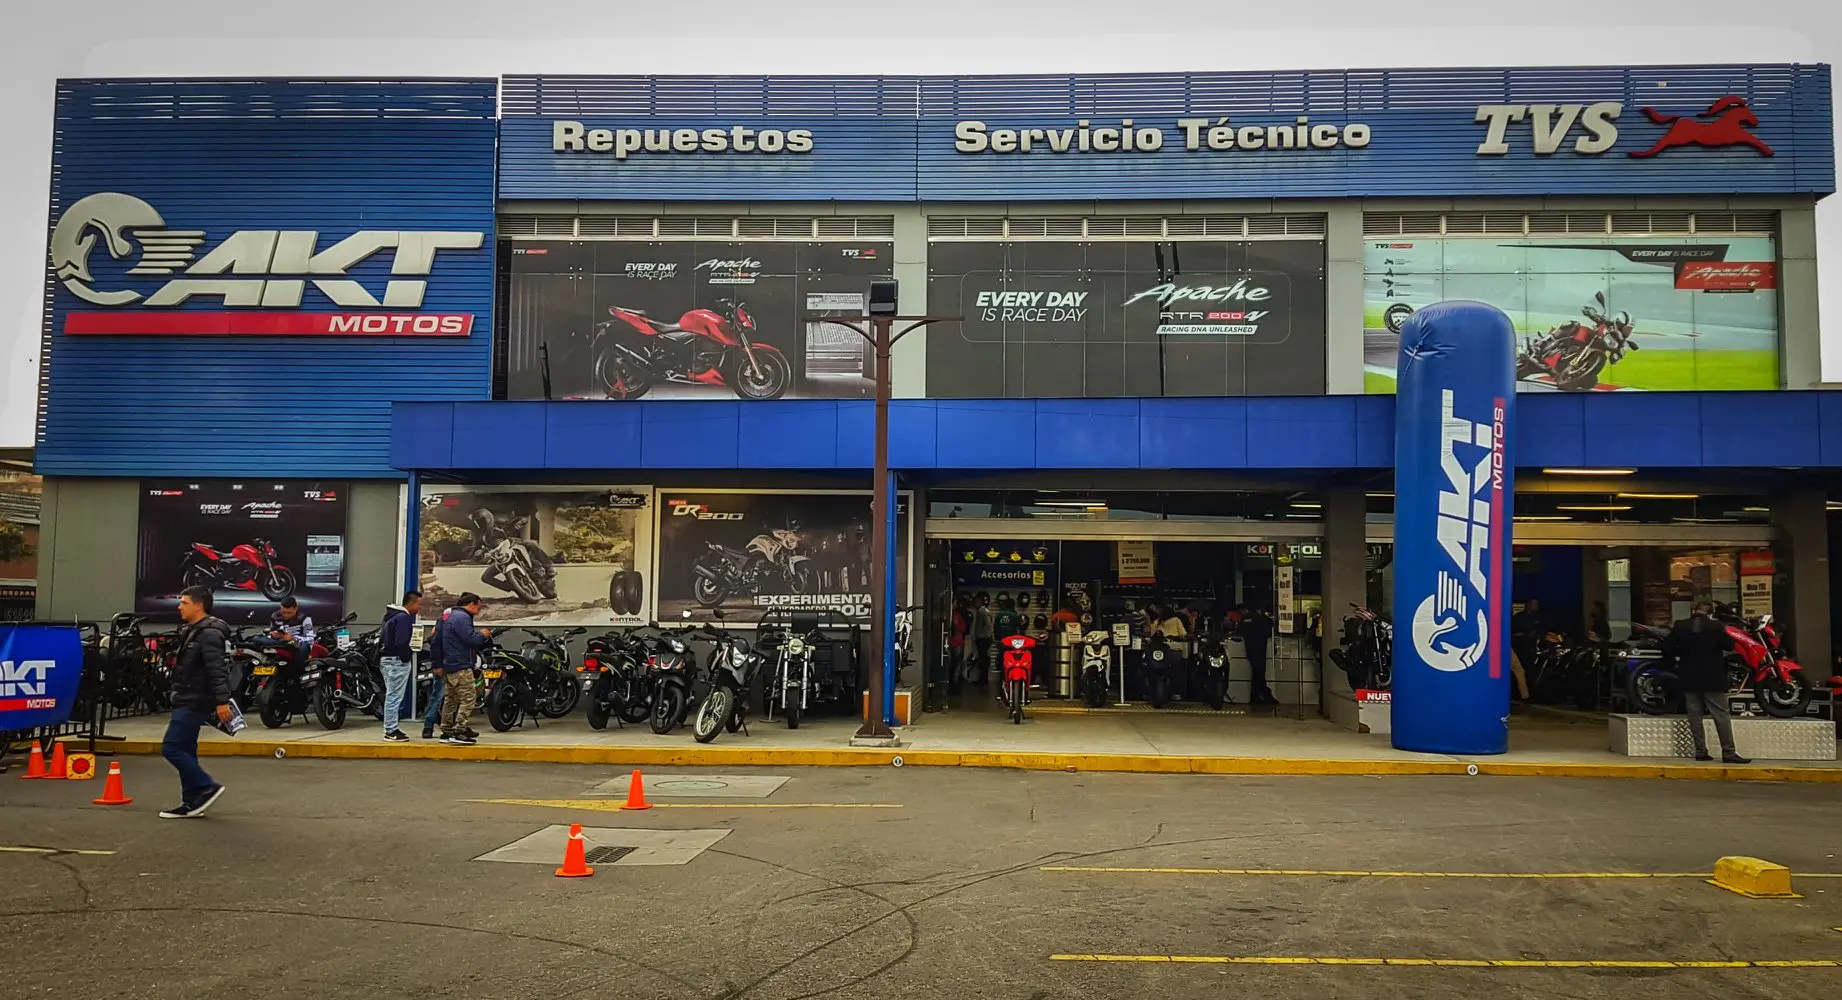 akt motos colombia - Qué precio tiene la Nkd en Colombia